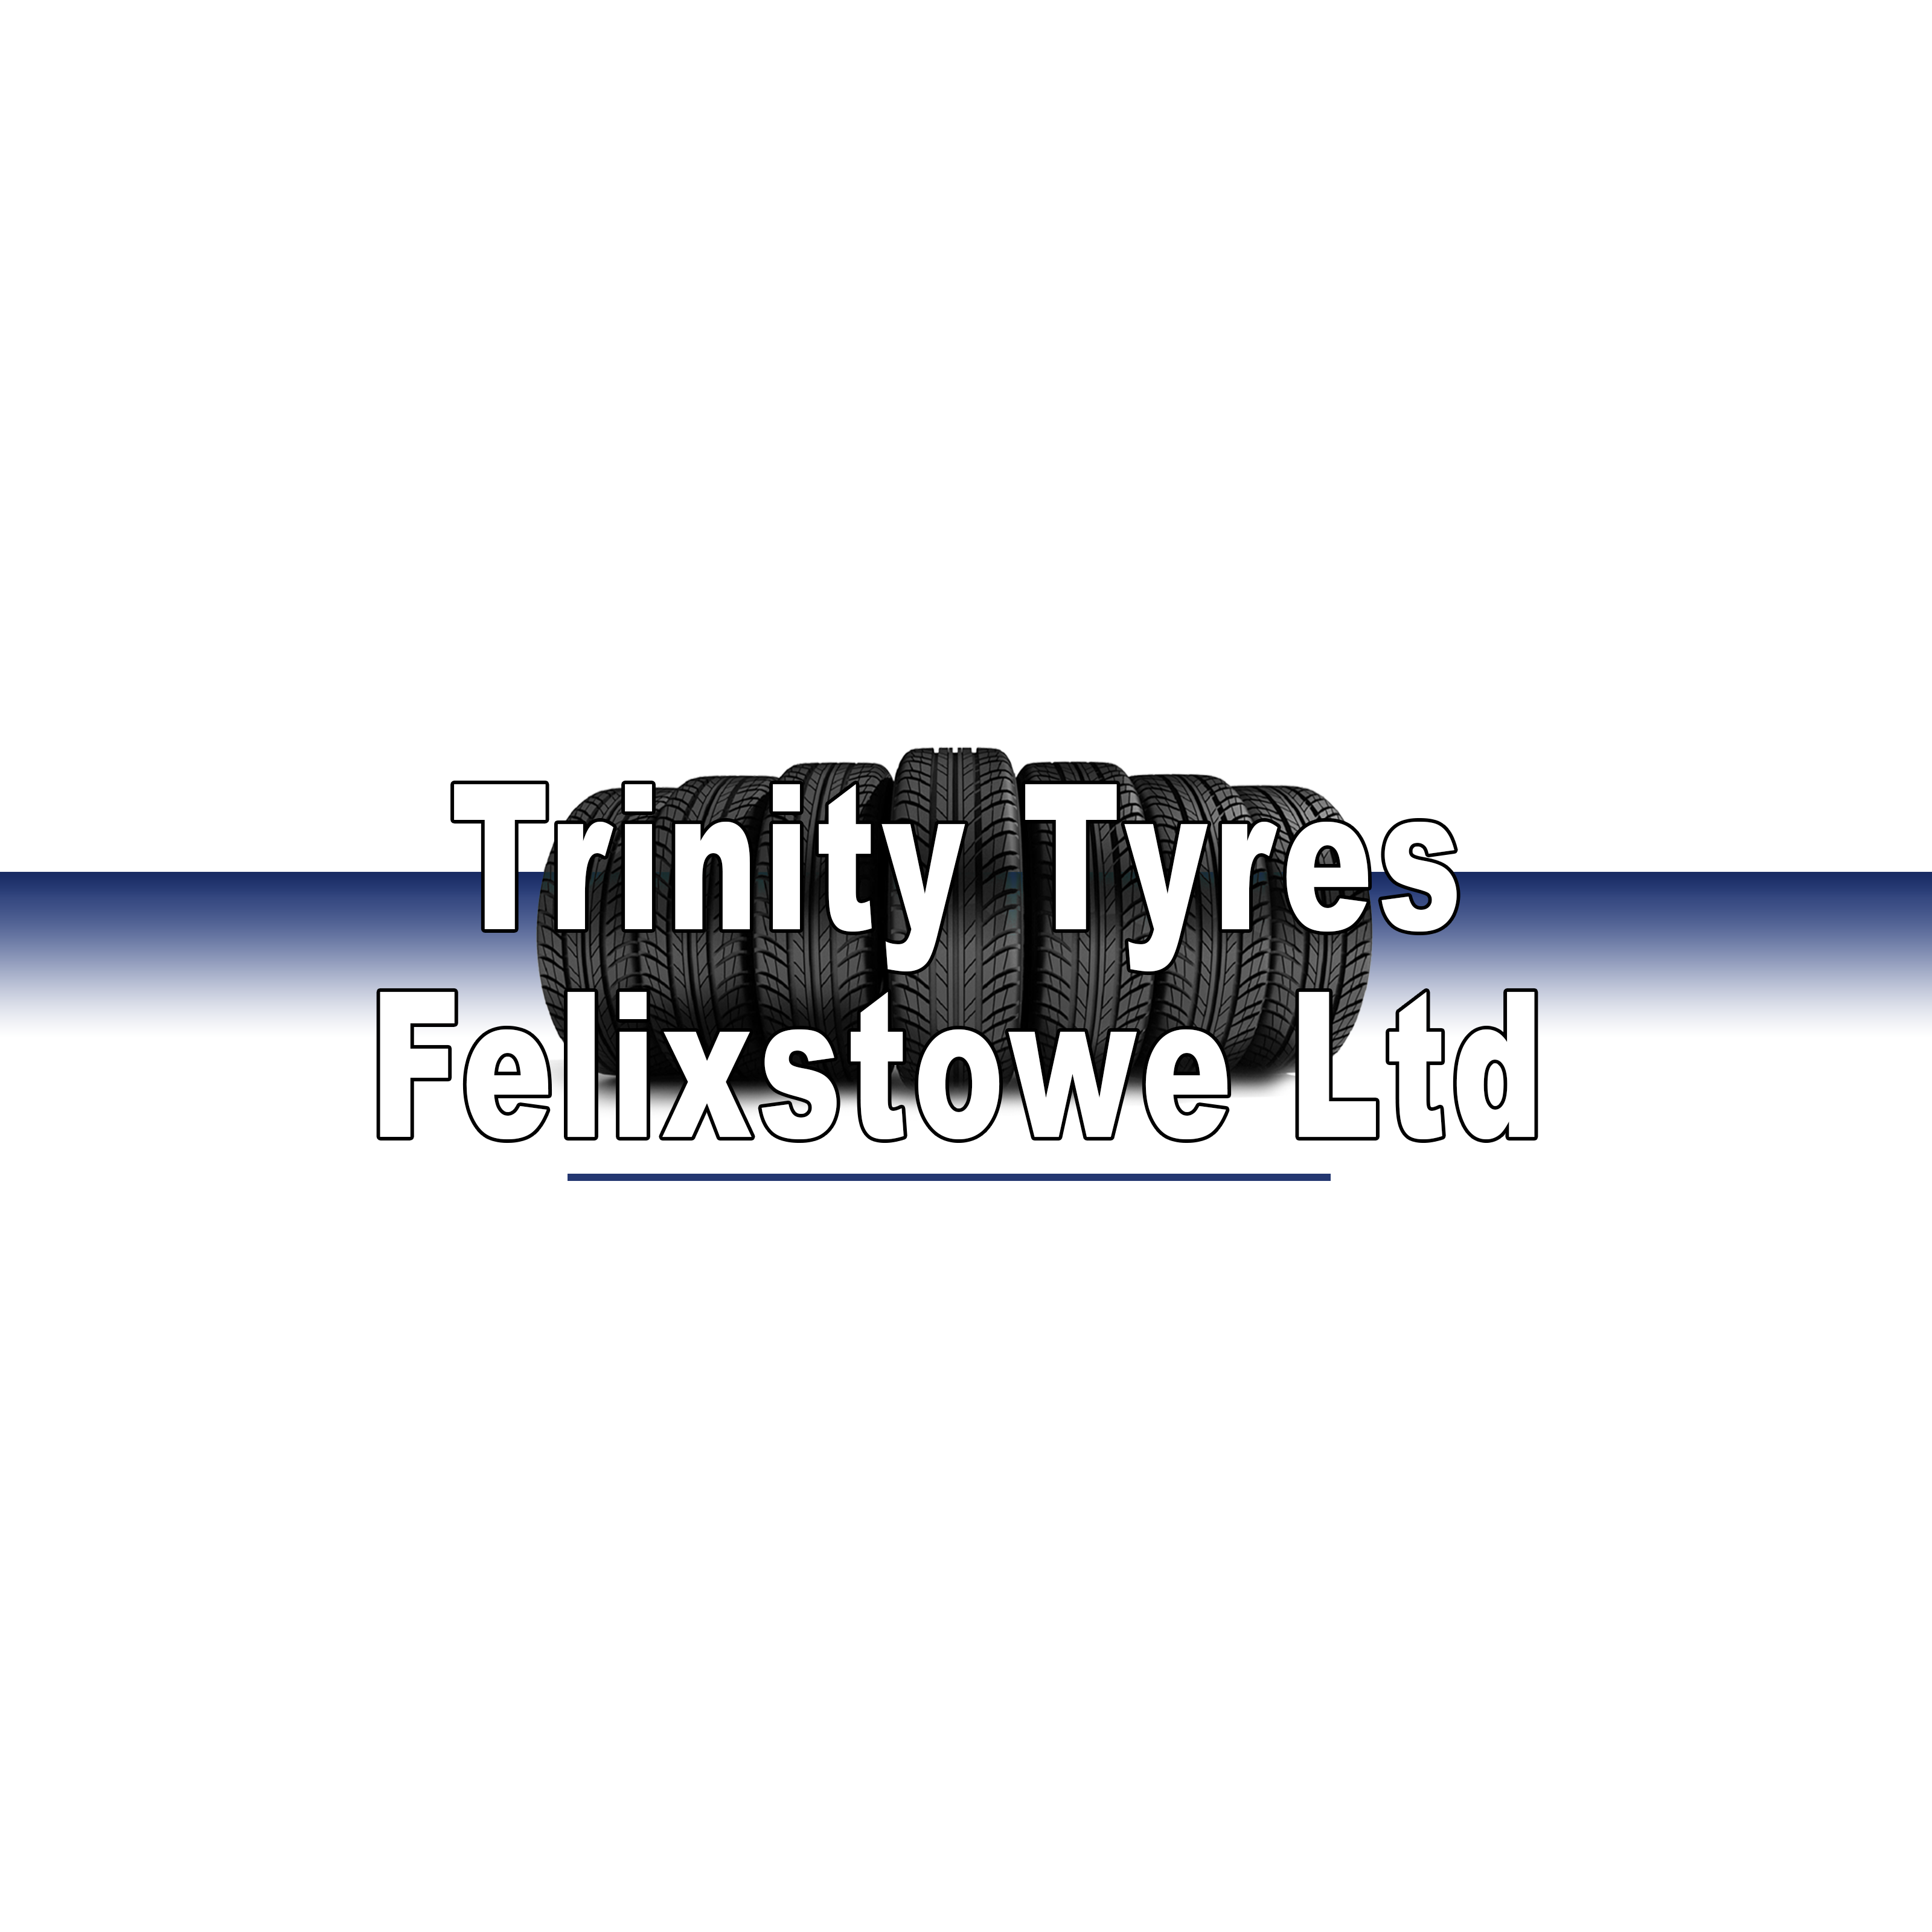 Trinity Tyres (Felixstowe) Limited - Felixstowe, Essex IP11 2DB - 01394 276167 | ShowMeLocal.com